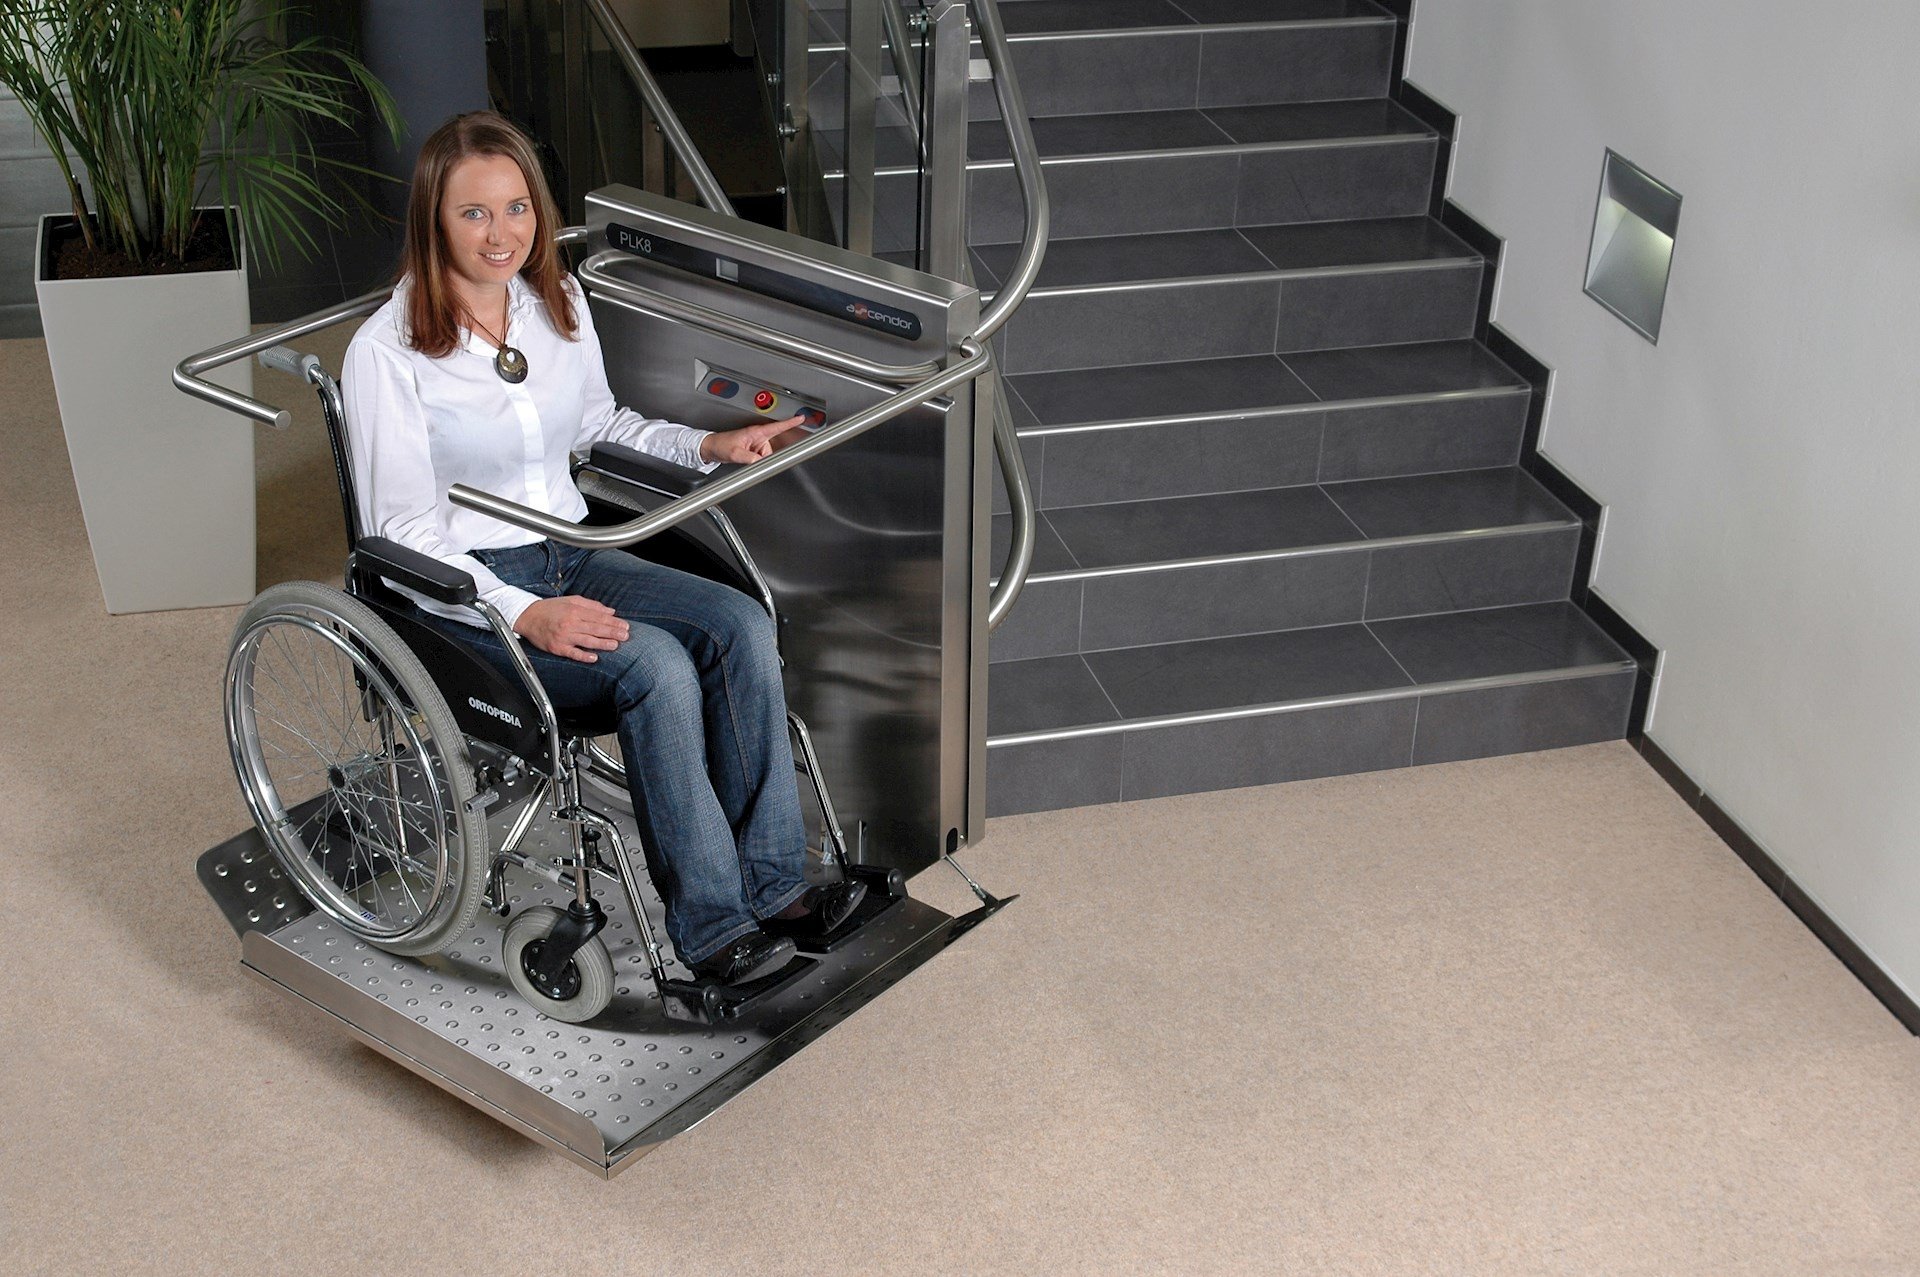 Сайт для инвалидов дверь. ИНВАПРОМ а310 подъемник для инвалидов. Подъемная платформа БК-320 для инвалидов. Наклонная платформа - подъемник для инвалидов НПУ-001. Вертикальная платформа-подъемник для инвалидов 1100x1250 Veara EASYLIFT.